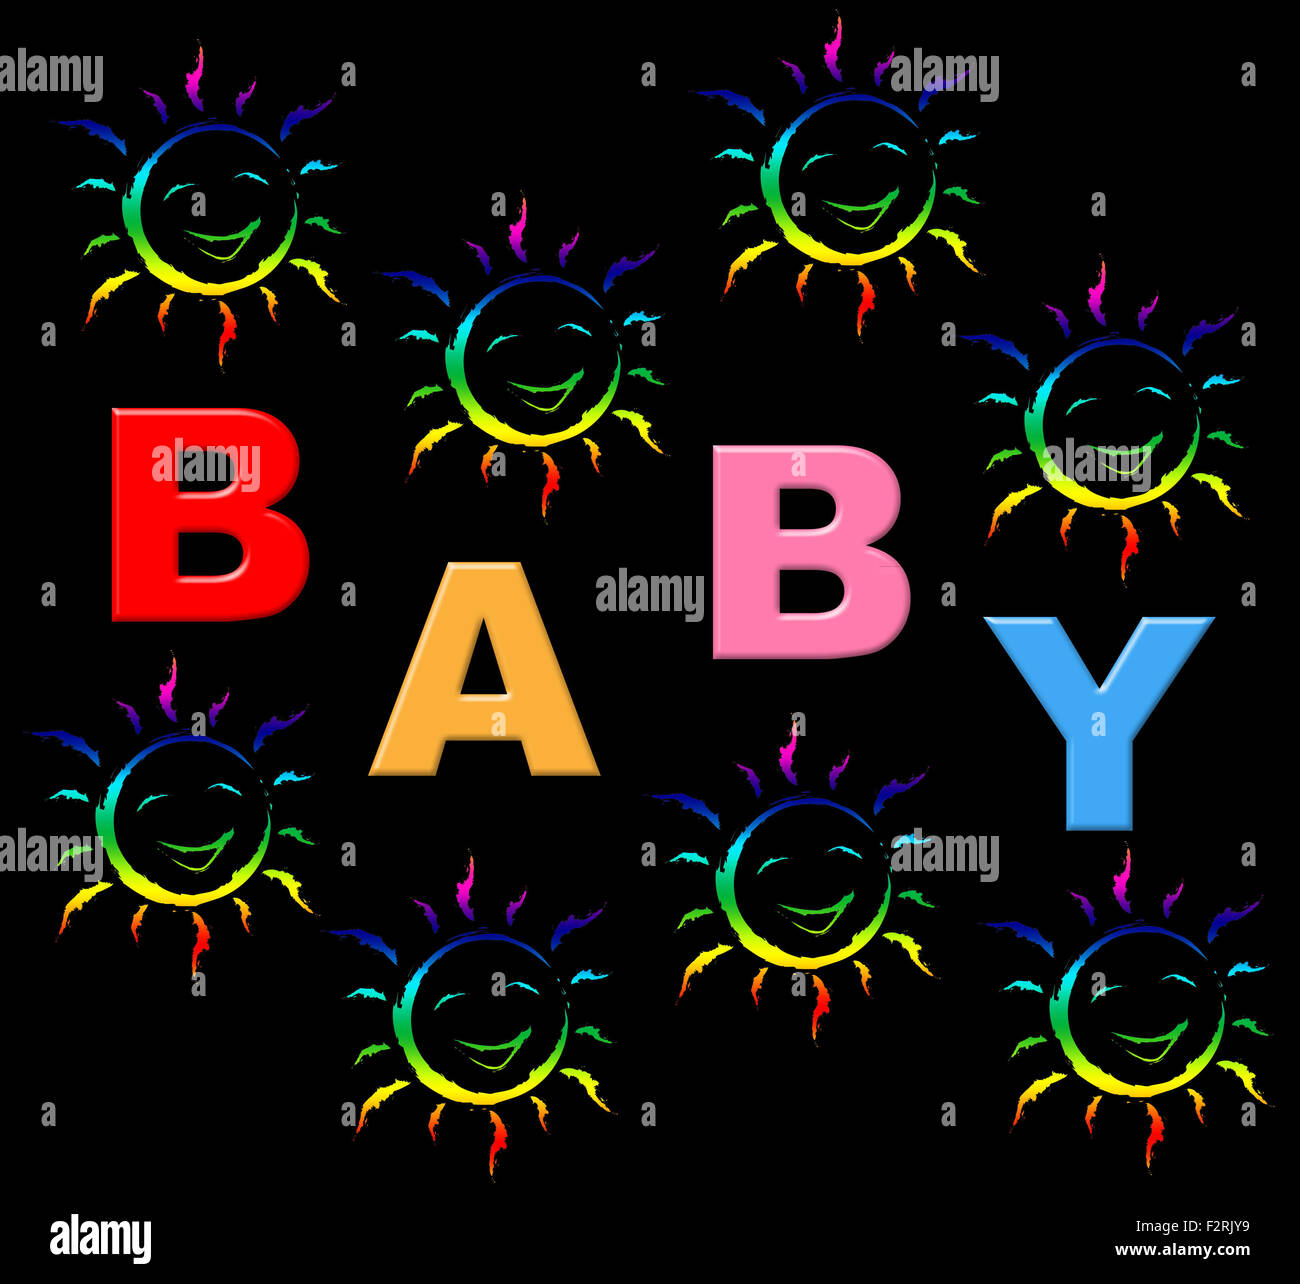 Mani Baby che mostra la paternità della maternità e della paternità e maternità Foto Stock